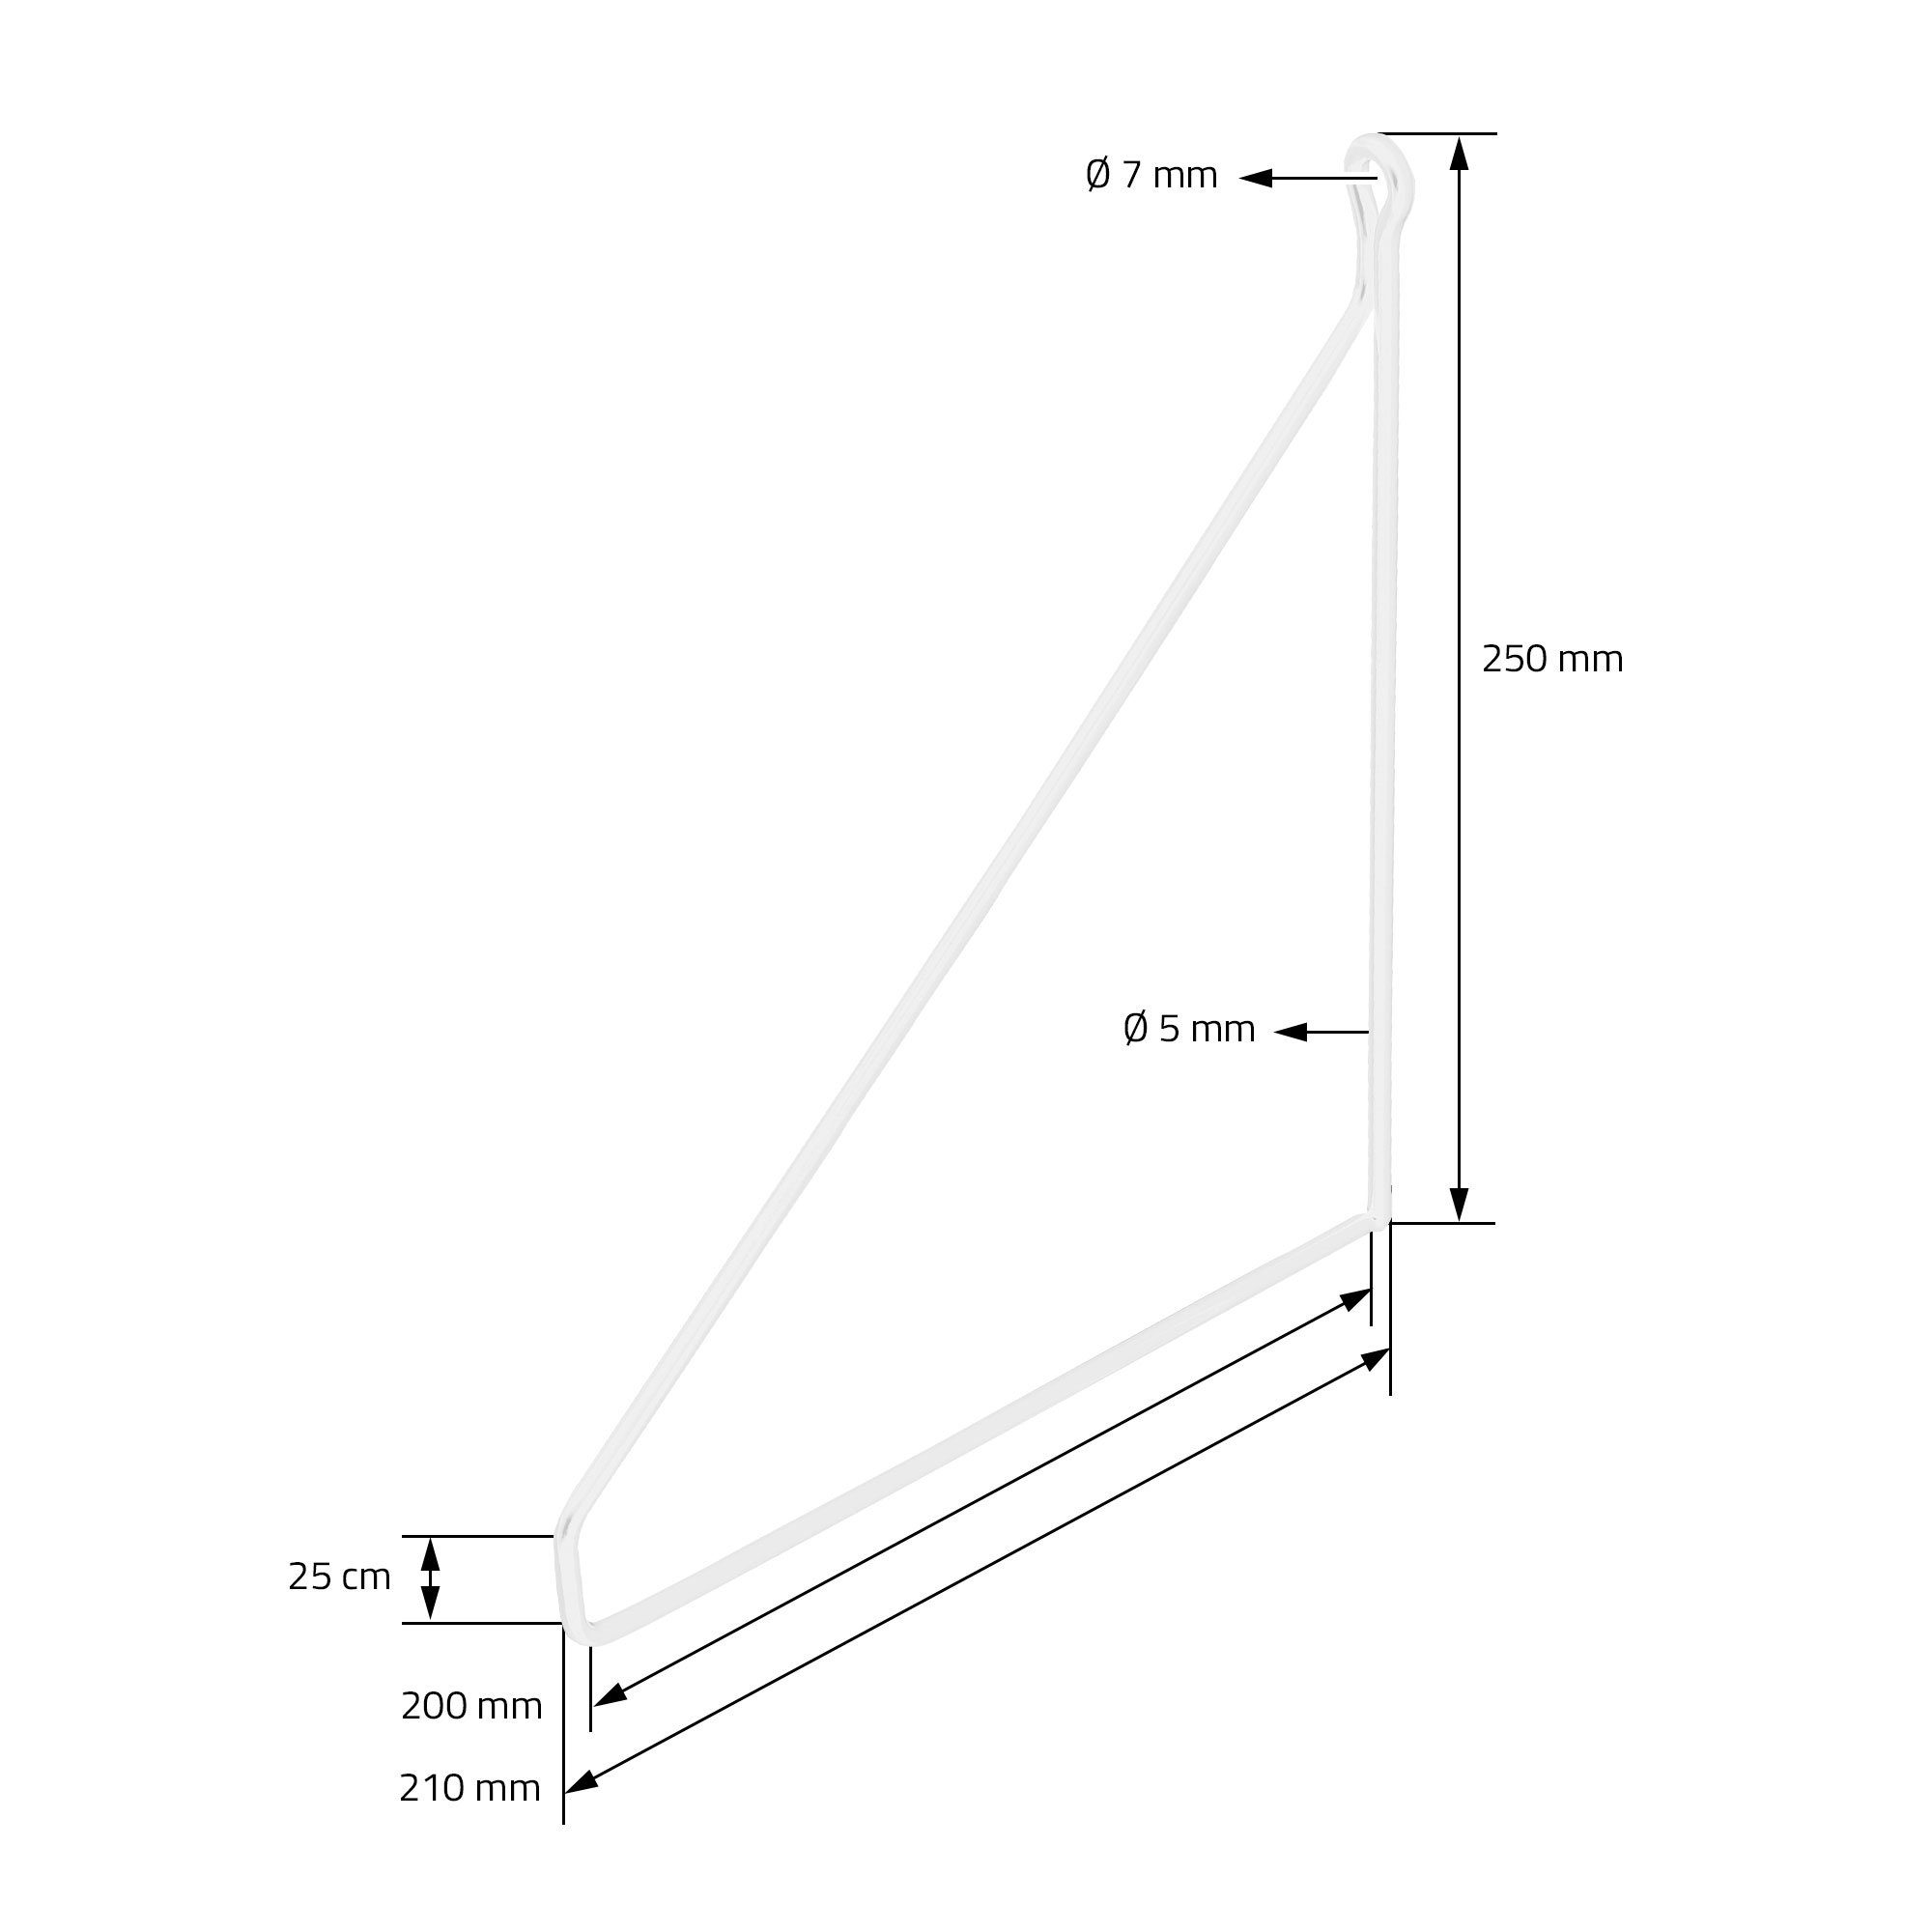 Draht Wandmontage Weiß Regal Metall Regalhalterung Wandhalterung Dreieckig 2 Regalträger, Regalwinkel ML-DESIGN 200mm Schwebe Stück